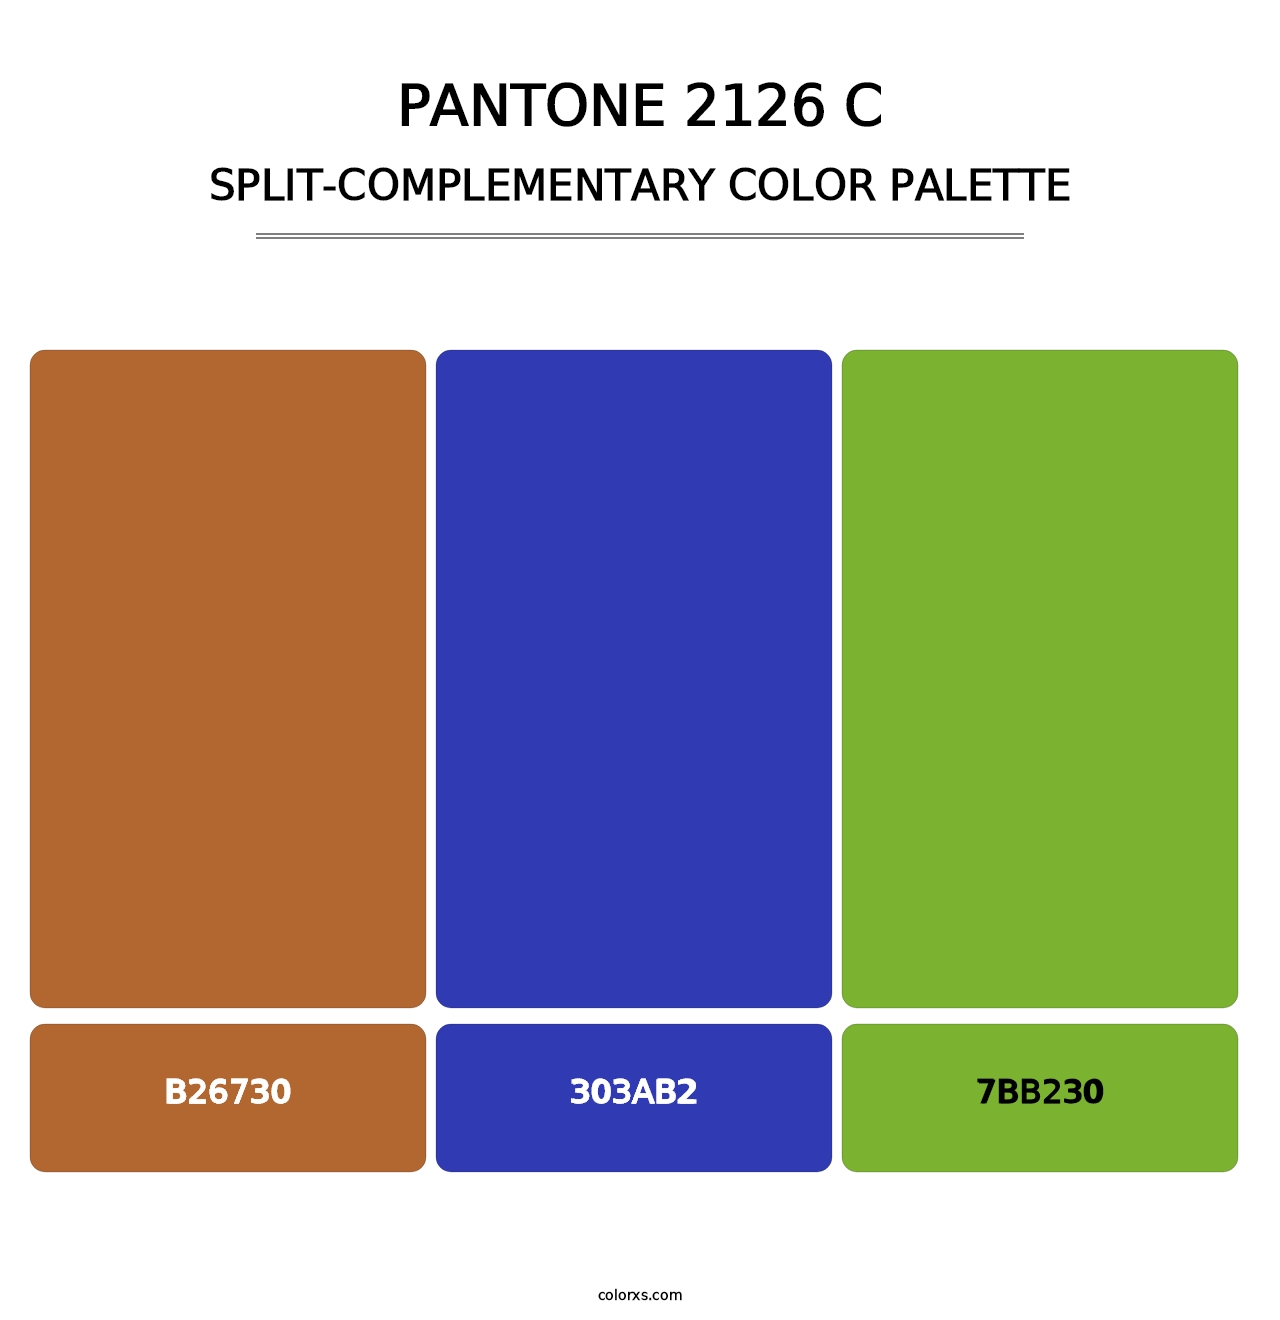 PANTONE 2126 C - Split-Complementary Color Palette